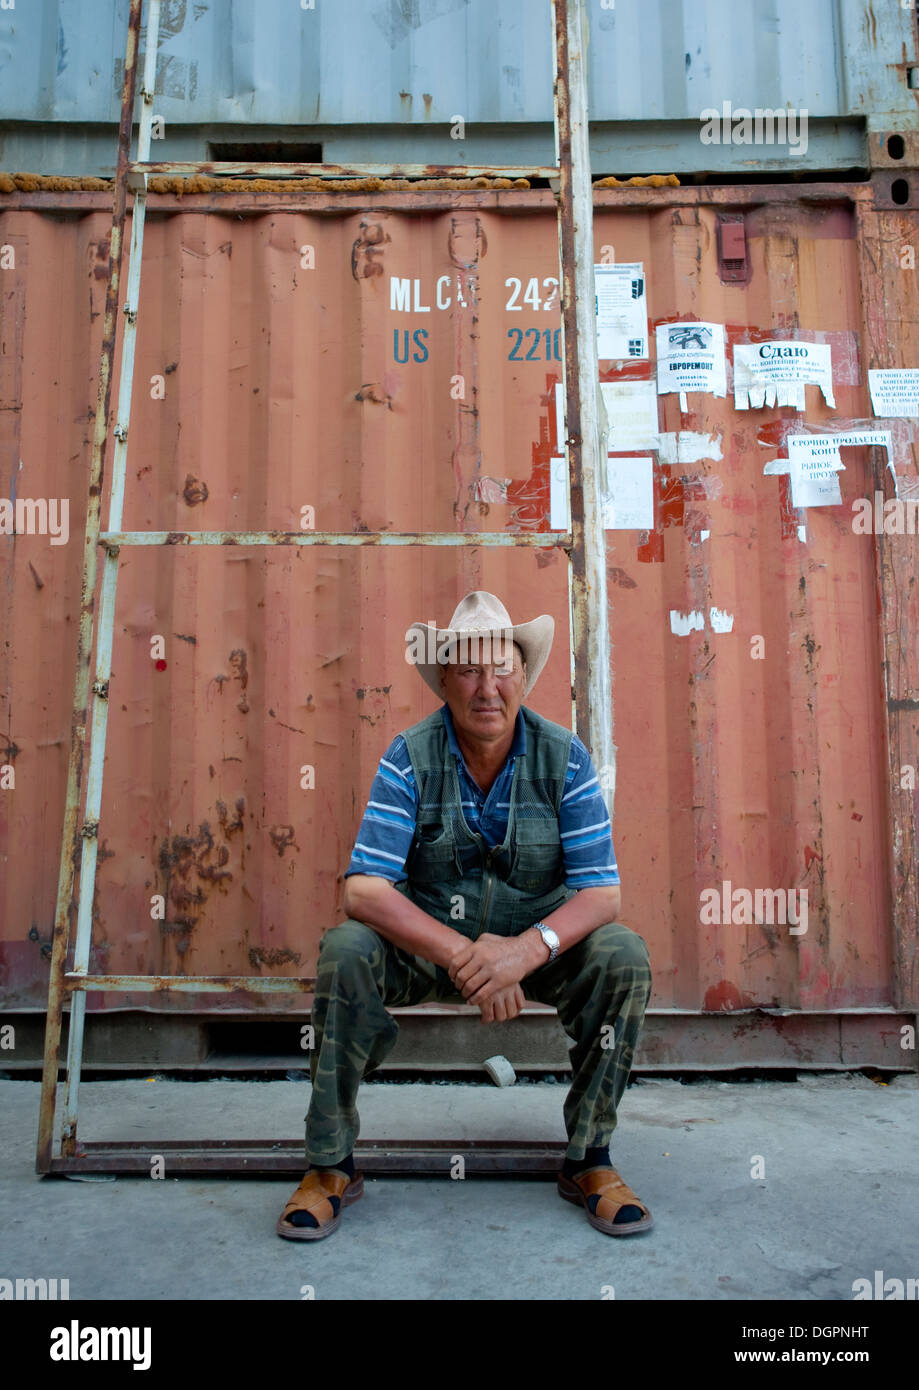 Hombre con un sombrero de Cow Boy sentado delante de un contenedor en el mercado Dordoi, Bishkek, Kirguistán Foto de stock